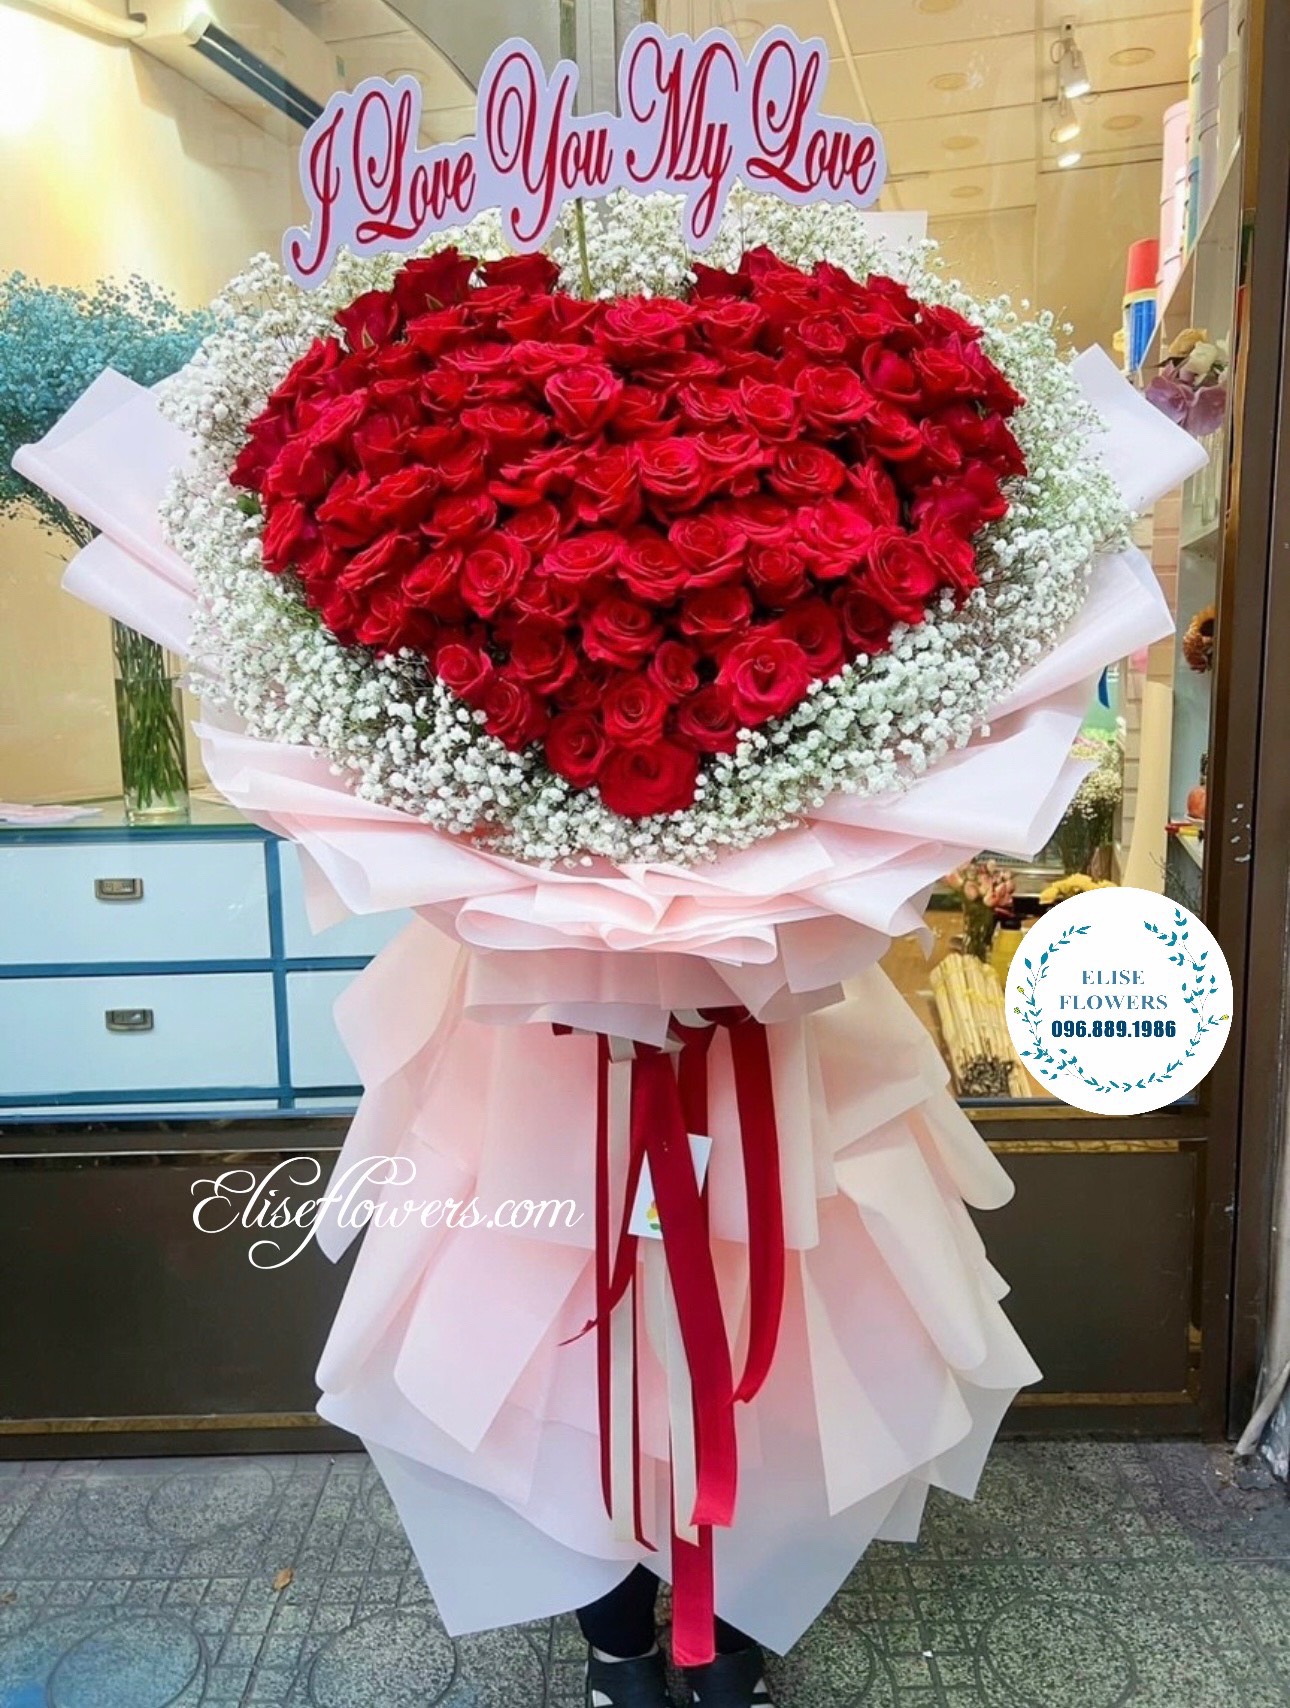 BÓ HOA HỒNG ĐỎ TRÁI TIM. Bó hoa hồng đỏ trái tim ở Hà Nội. Đặt mua hoa hồng đỏ trái tim ở Hà Nội.